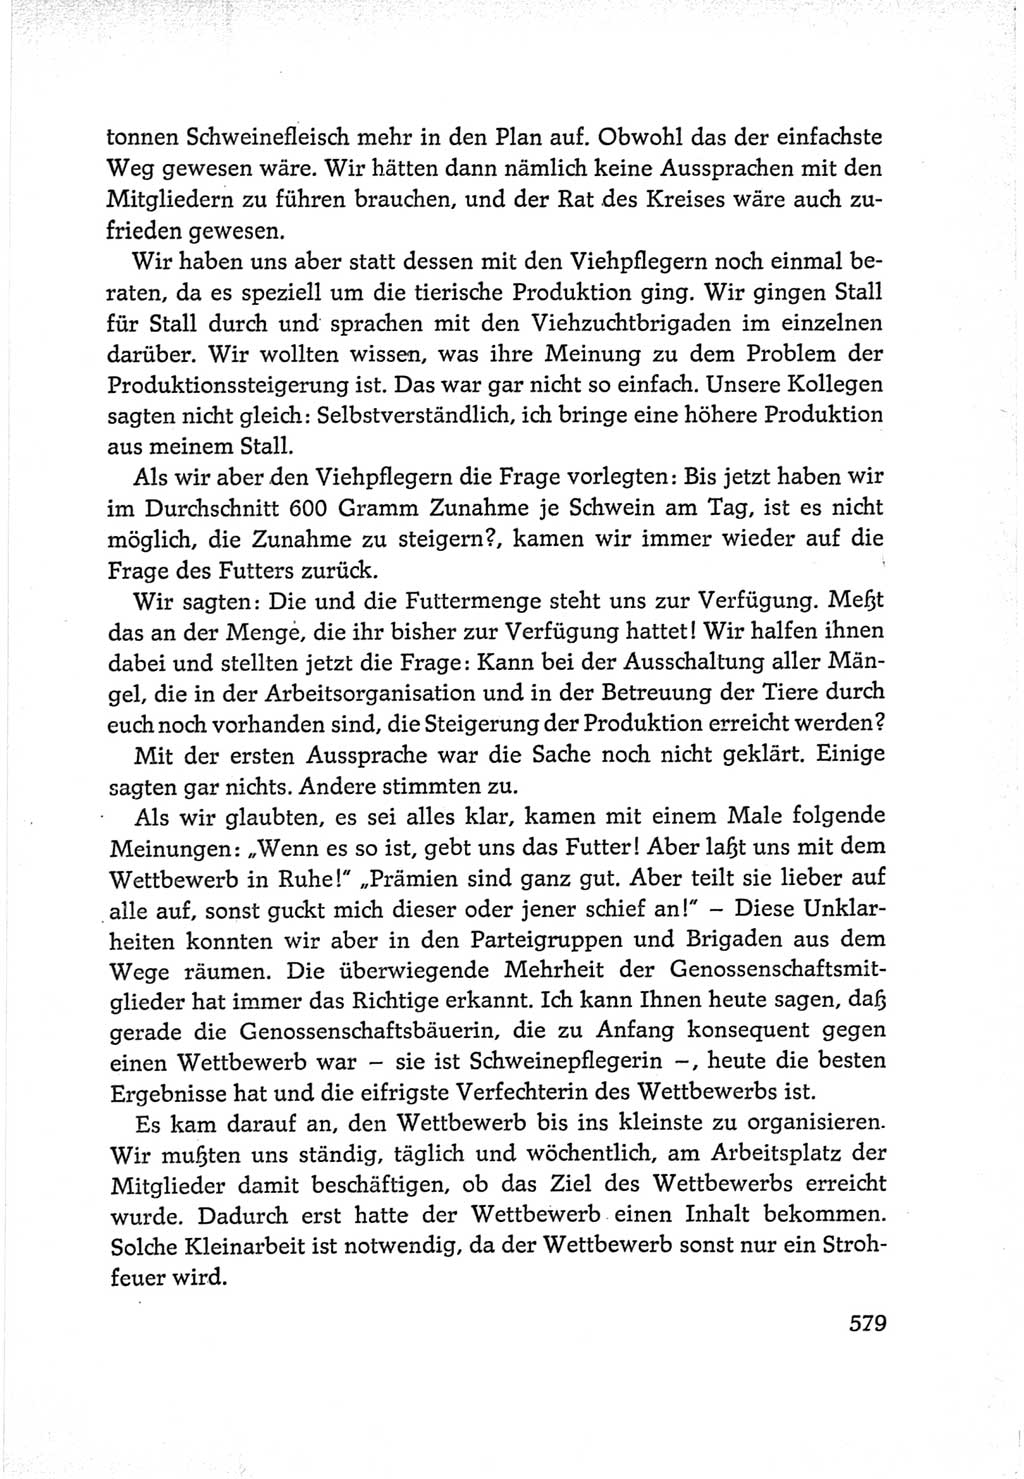 Protokoll der Verhandlungen des Ⅵ. Parteitages der Sozialistischen Einheitspartei Deutschlands (SED) [Deutsche Demokratische Republik (DDR)] 1963, Band Ⅰ, Seite 579 (Prot. Verh. Ⅵ. PT SED DDR 1963, Bd. Ⅰ, S. 579)